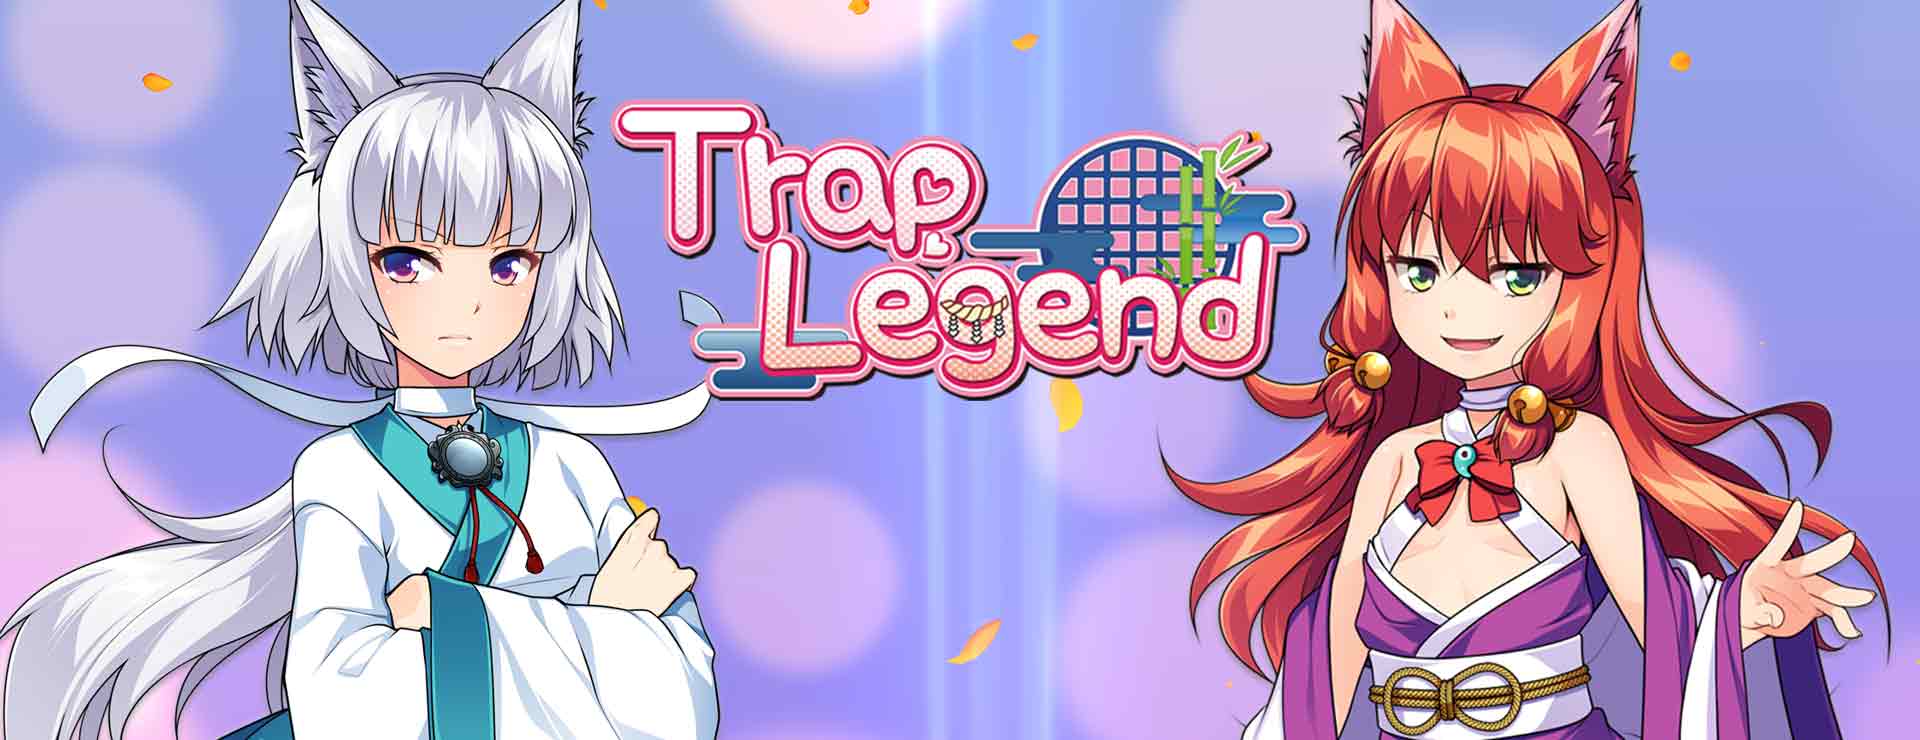 Trap Legend - 虚拟小说 遊戲